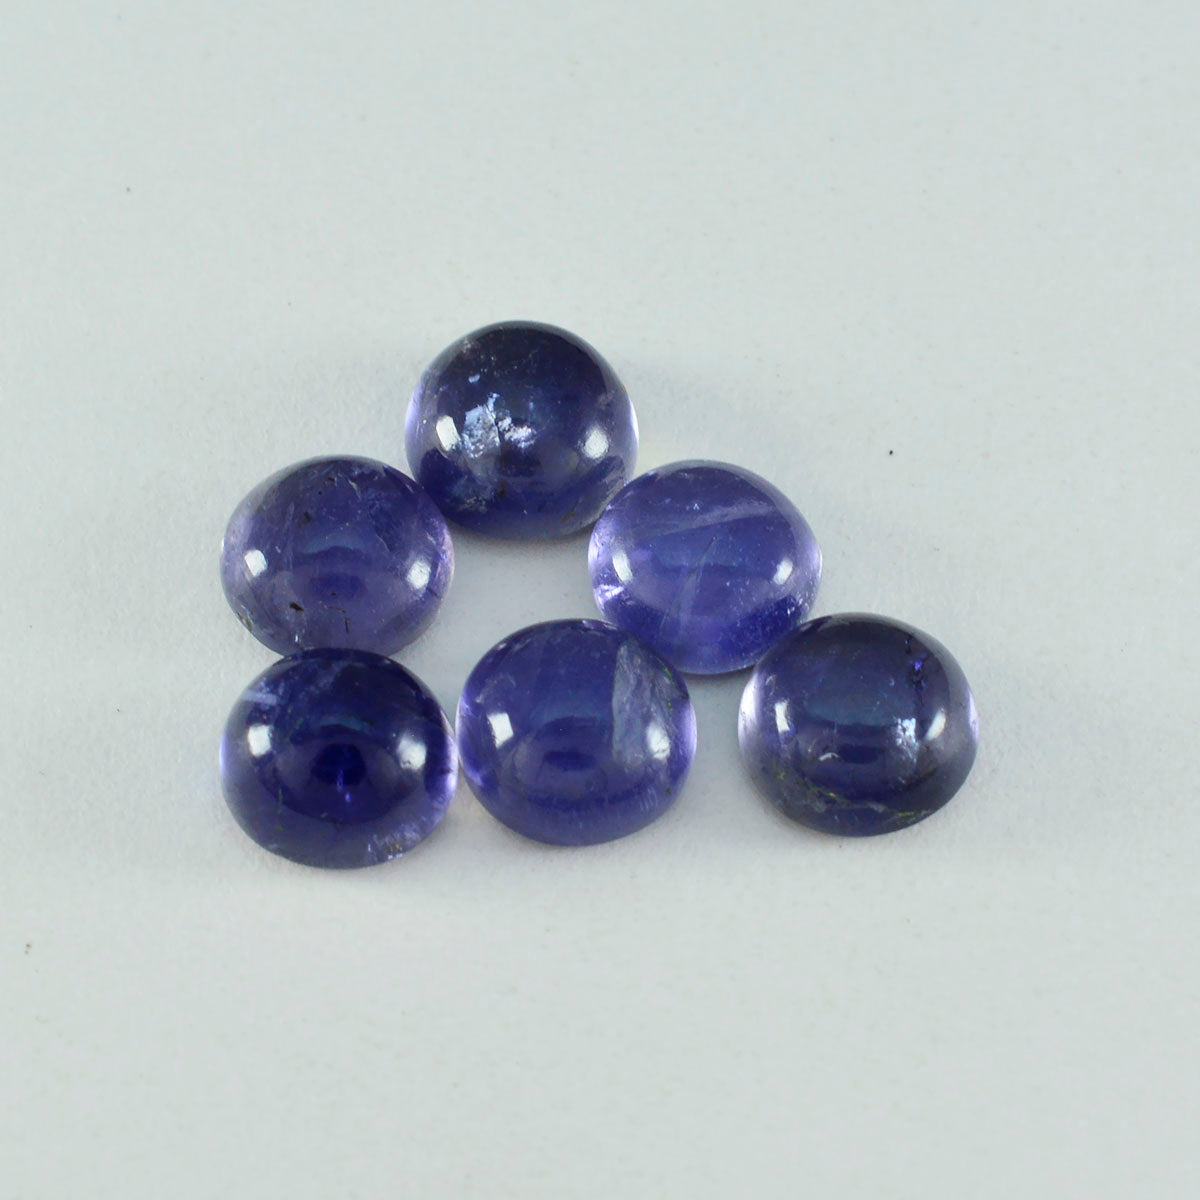 Riyogems 1 Stück blauer Iolith-Cabochon, 14 x 14 mm, runde Form, hübscher Qualitäts-Edelstein